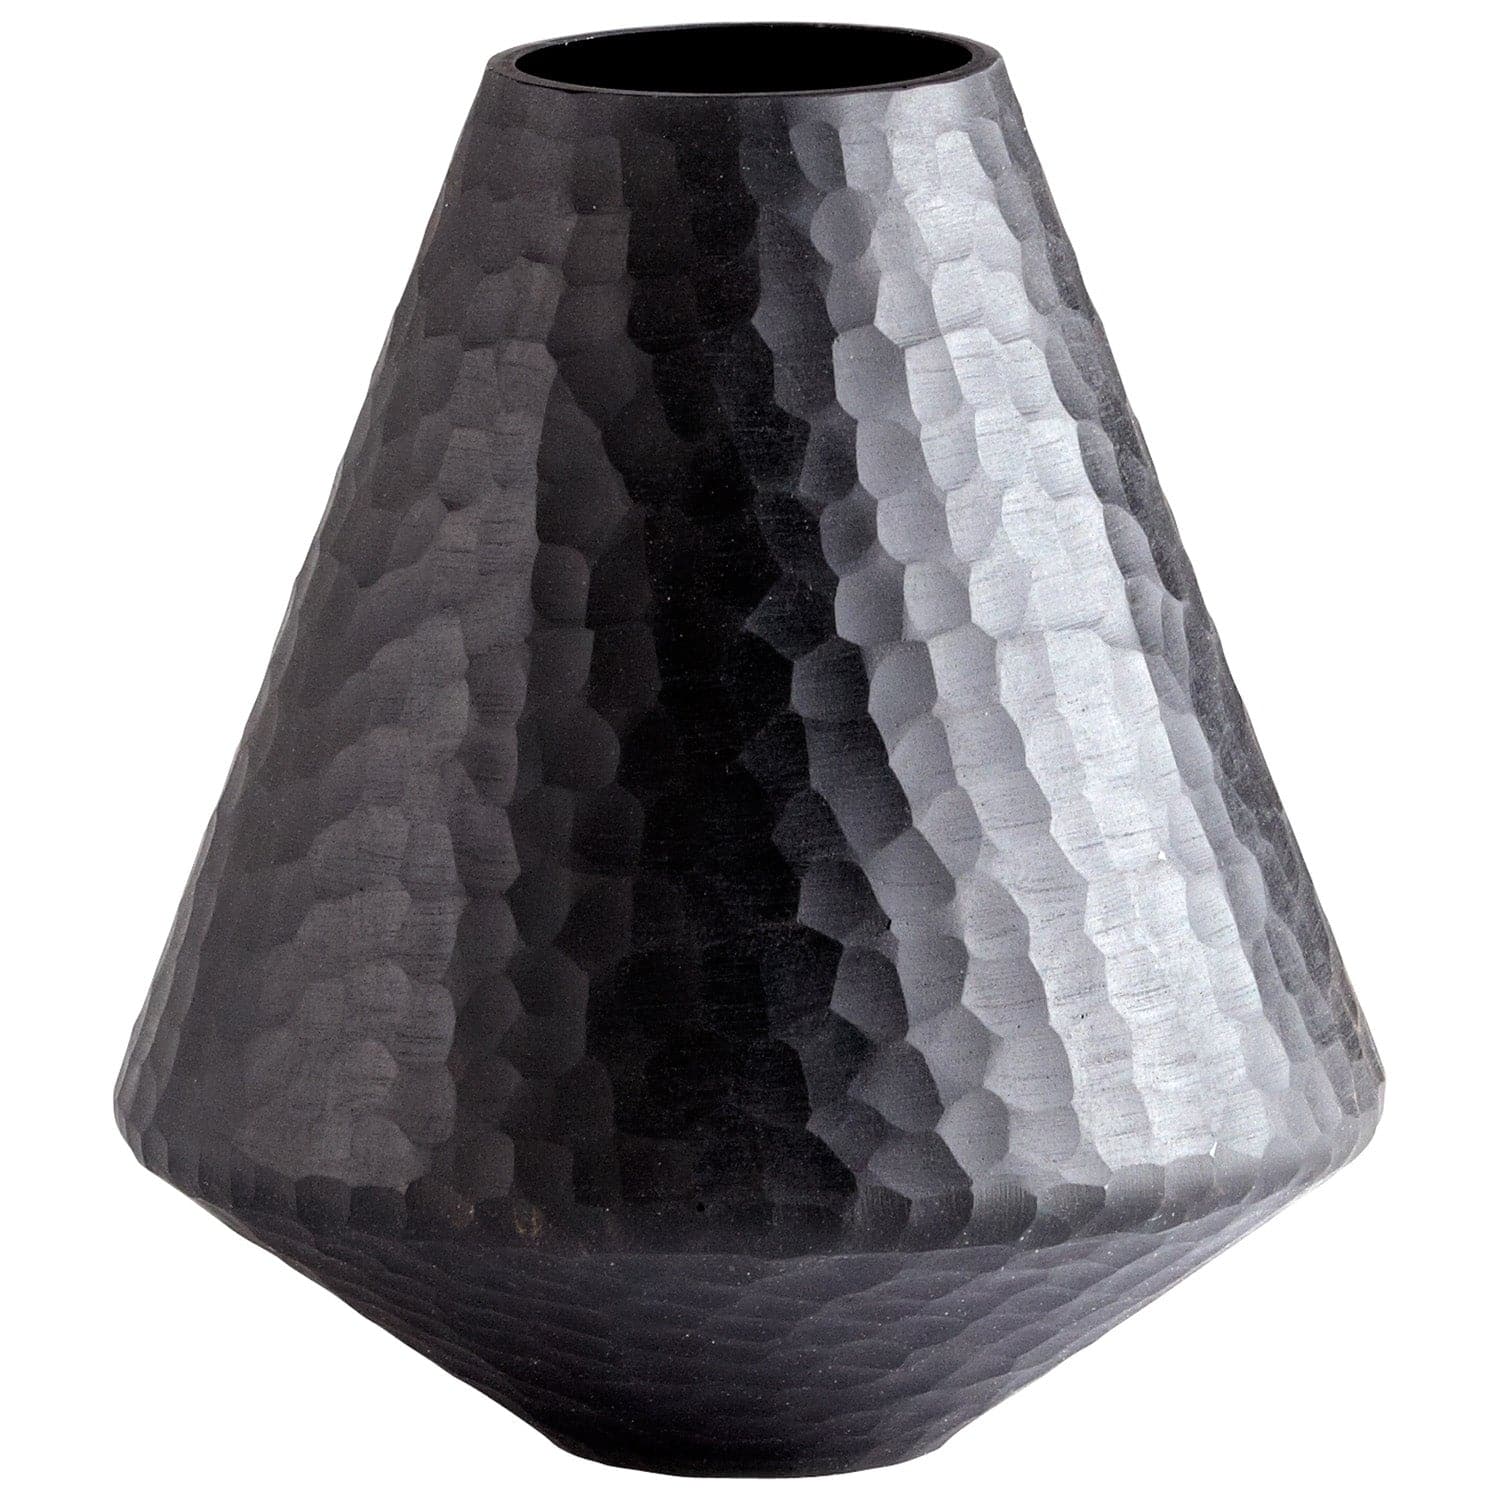 Cyan - 05385 - Vase - Vases - Black